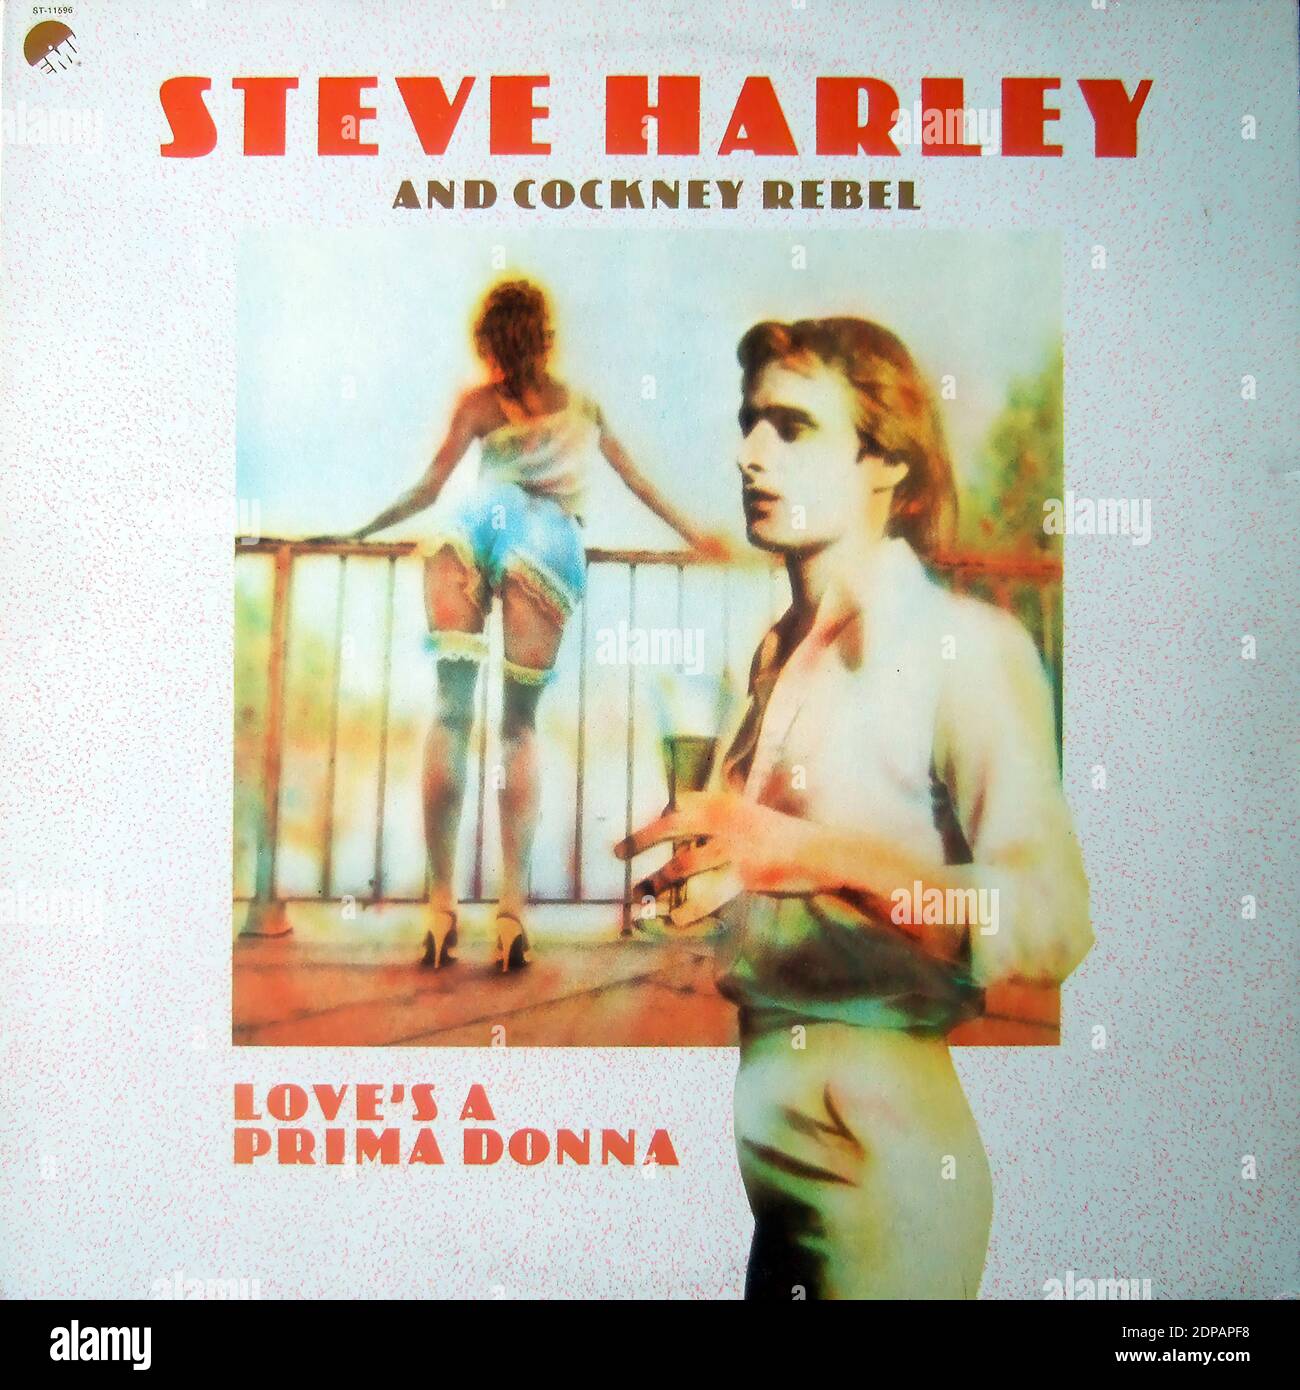 Steve Harley & Cockney Rebel - Love's A Prima Donna - Vintage vinyl album cover Stock Photo